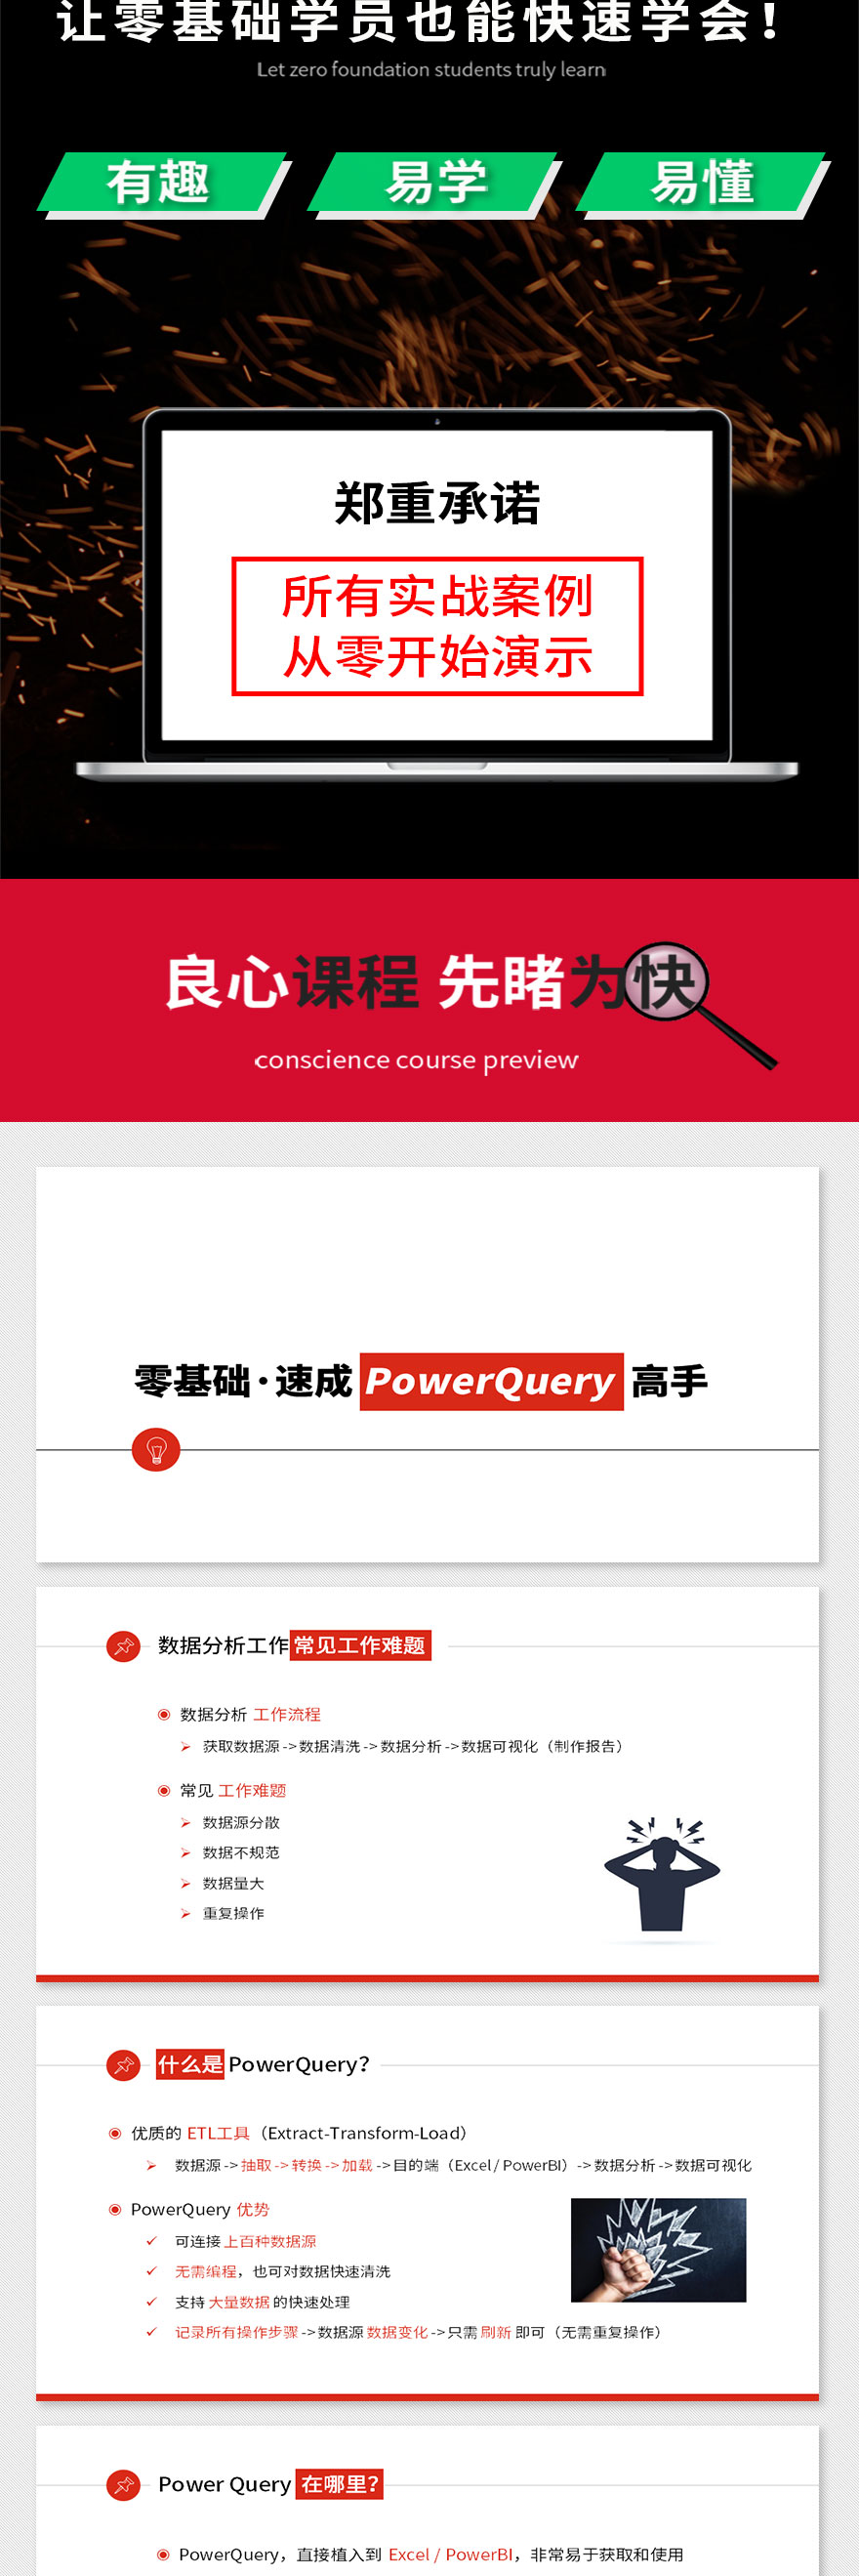 数据分析PowerQuery高手-网易云详情页_02.jpg